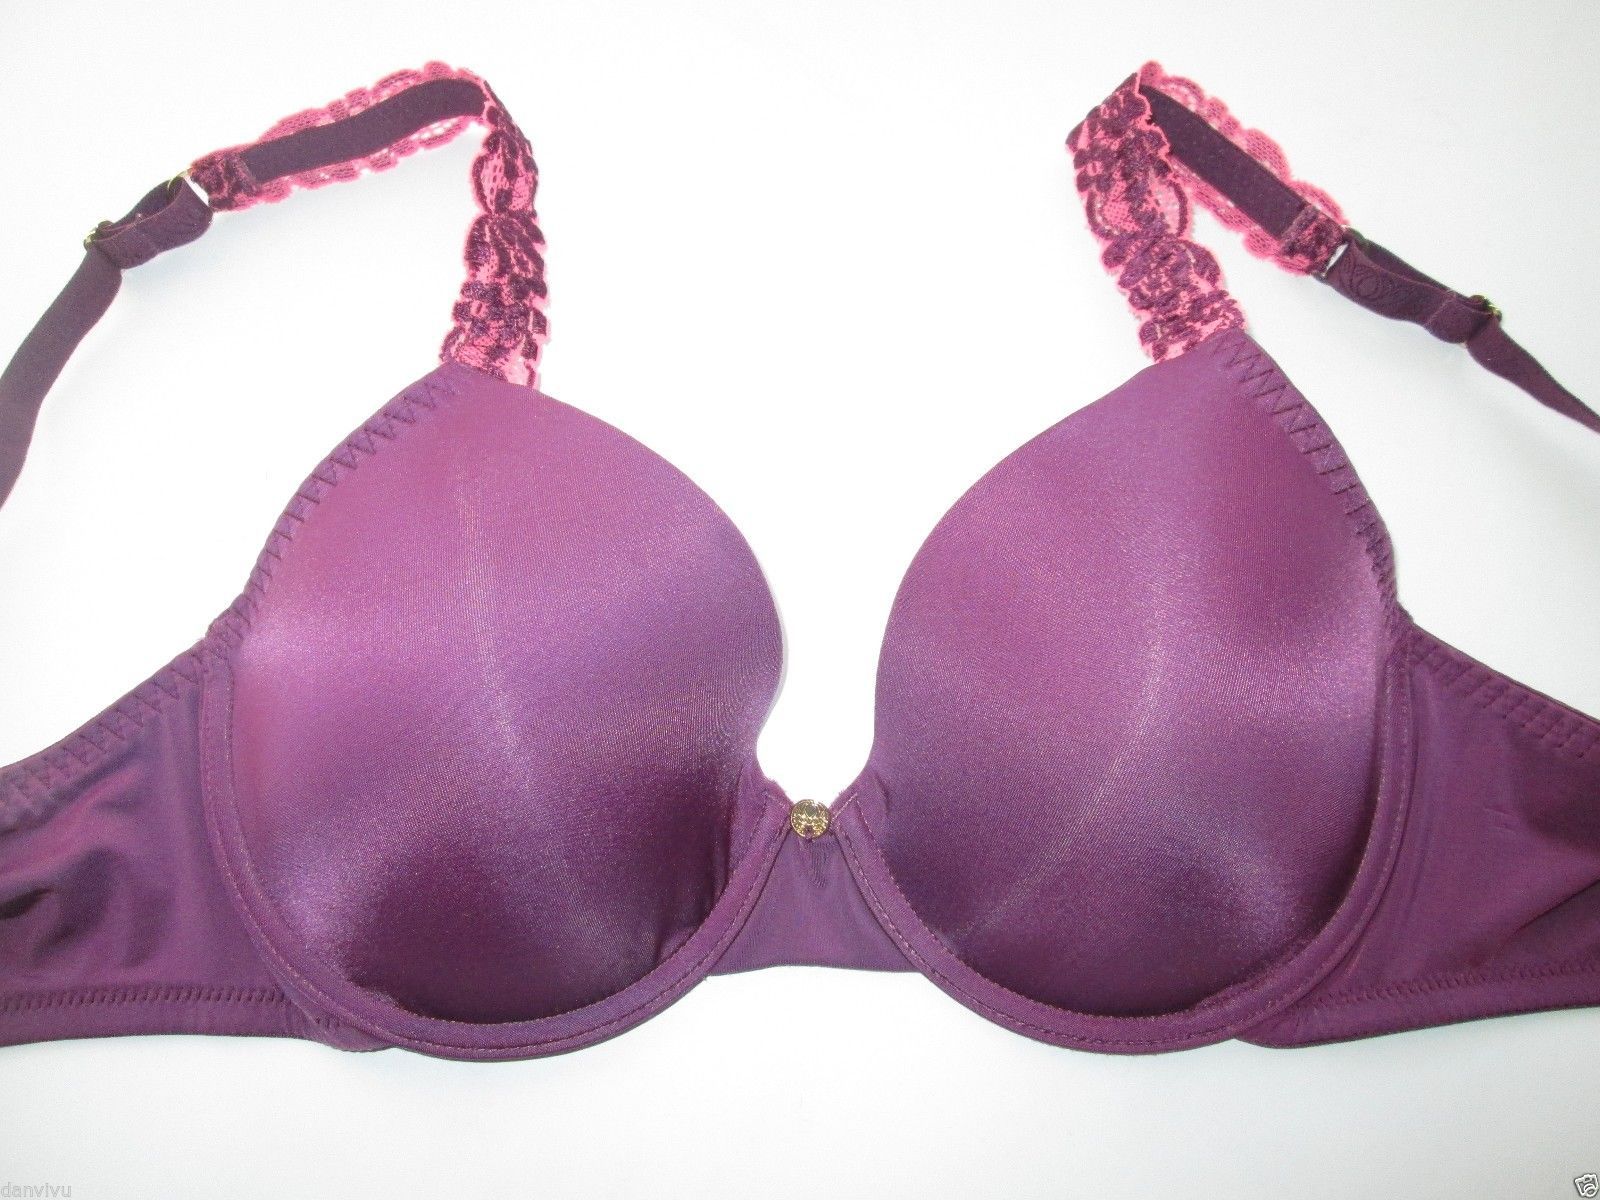 Primary image for Natori 136001 Body Double Lace Trim Full-Fit Contour UW Bra Dark Violet 34C $70